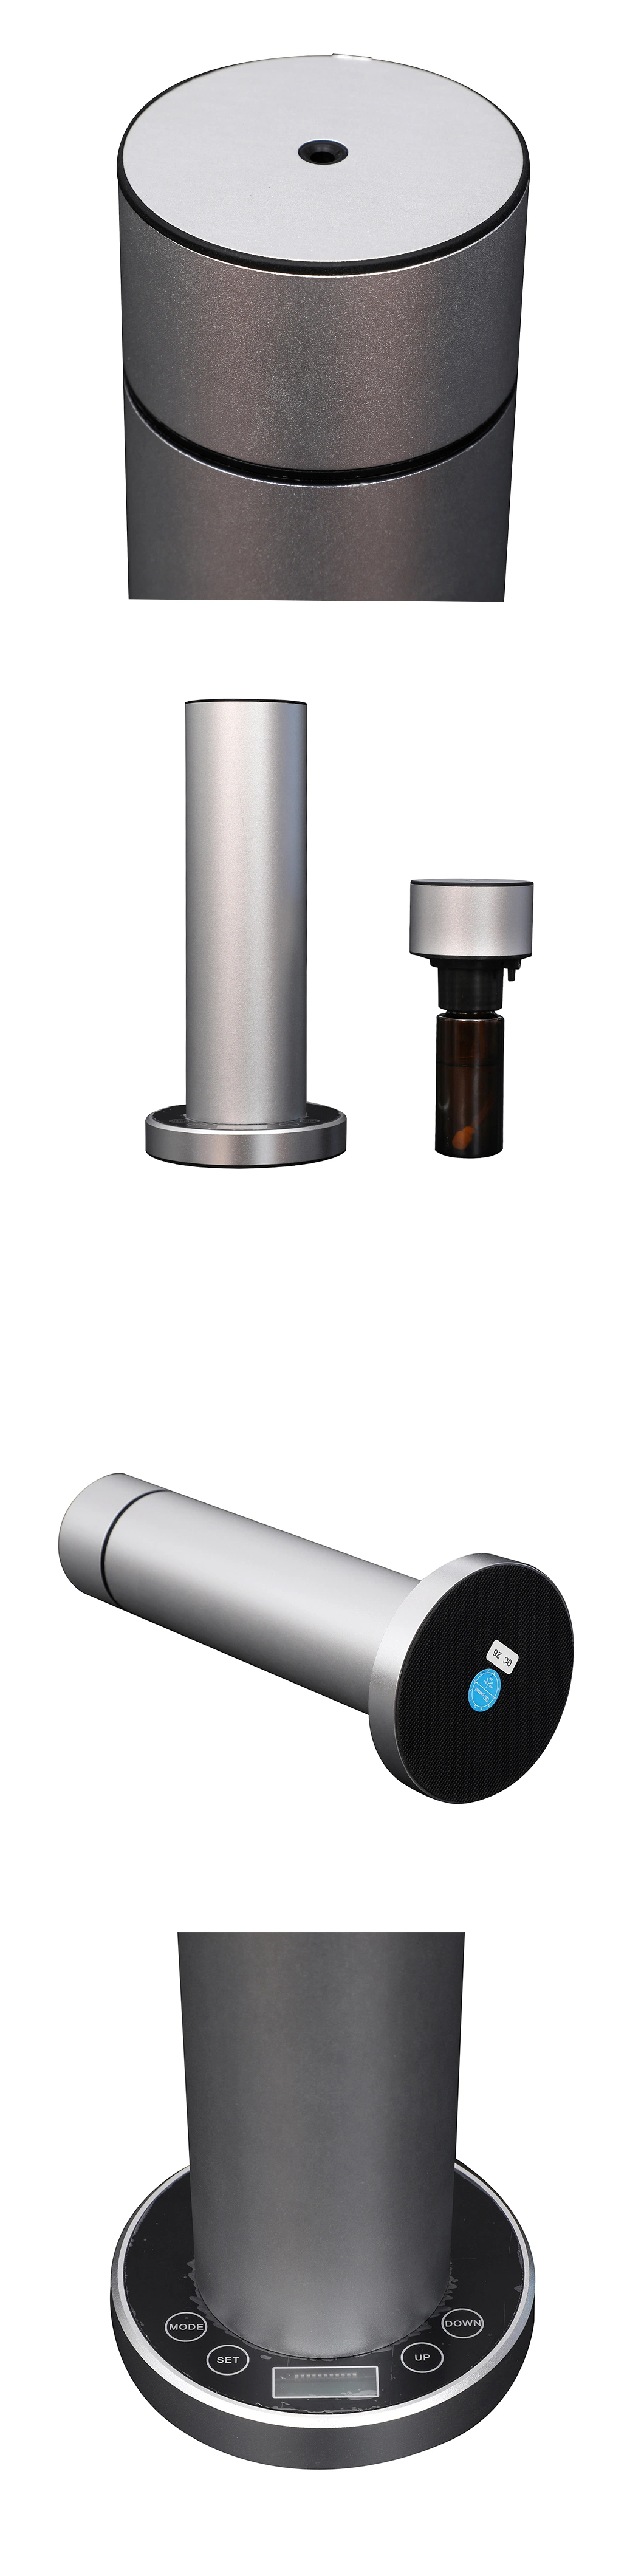 Portable Perfume Oil Aroma Scent Diffuser Home Dehumidifier